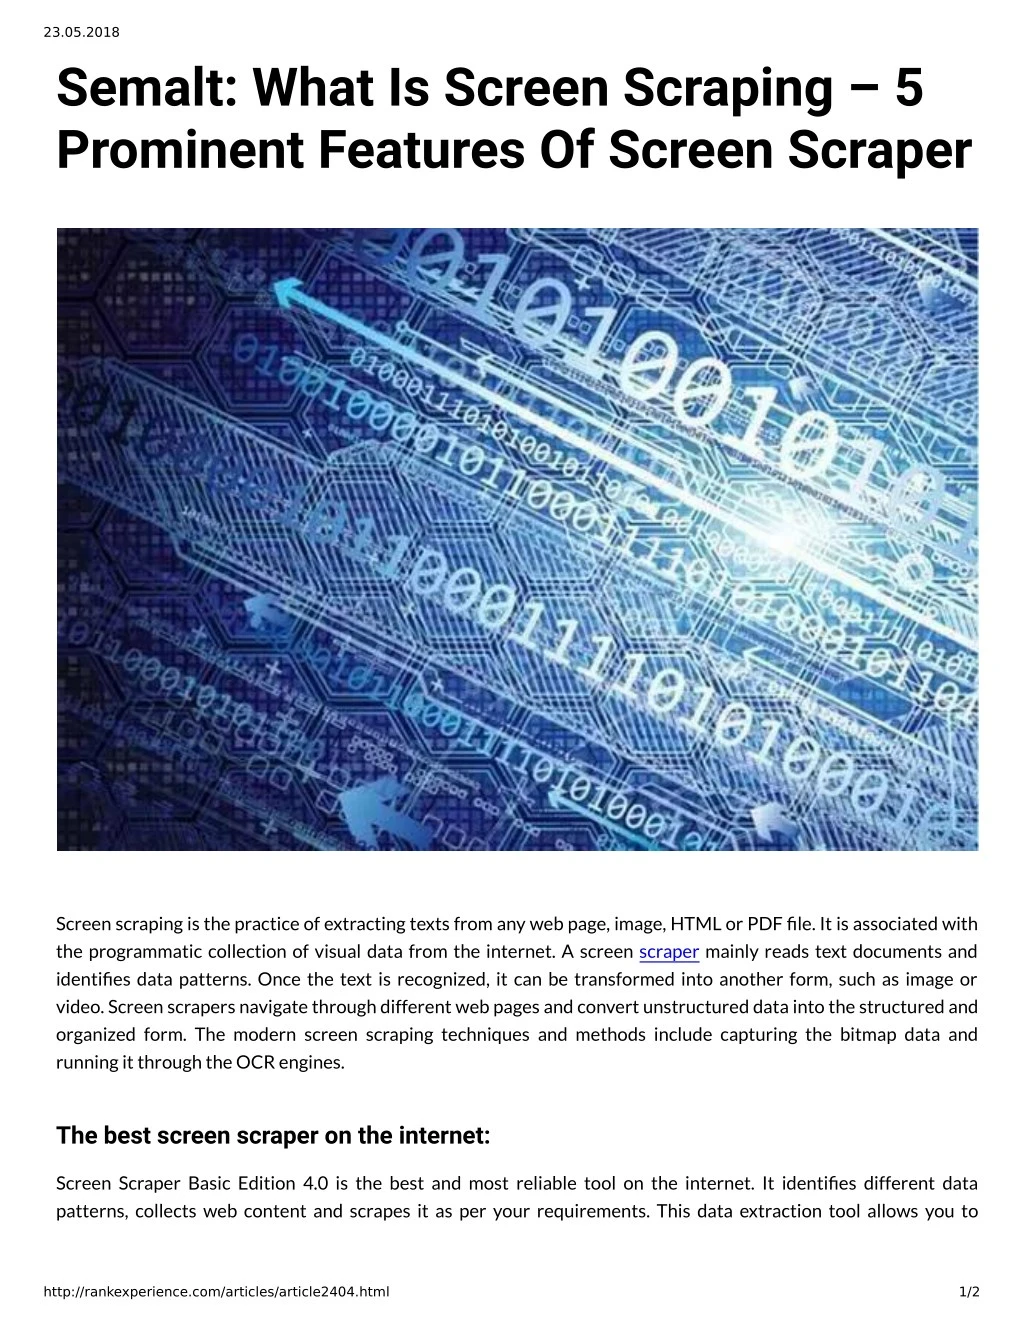 23 05 2018 semalt what is screen scraping